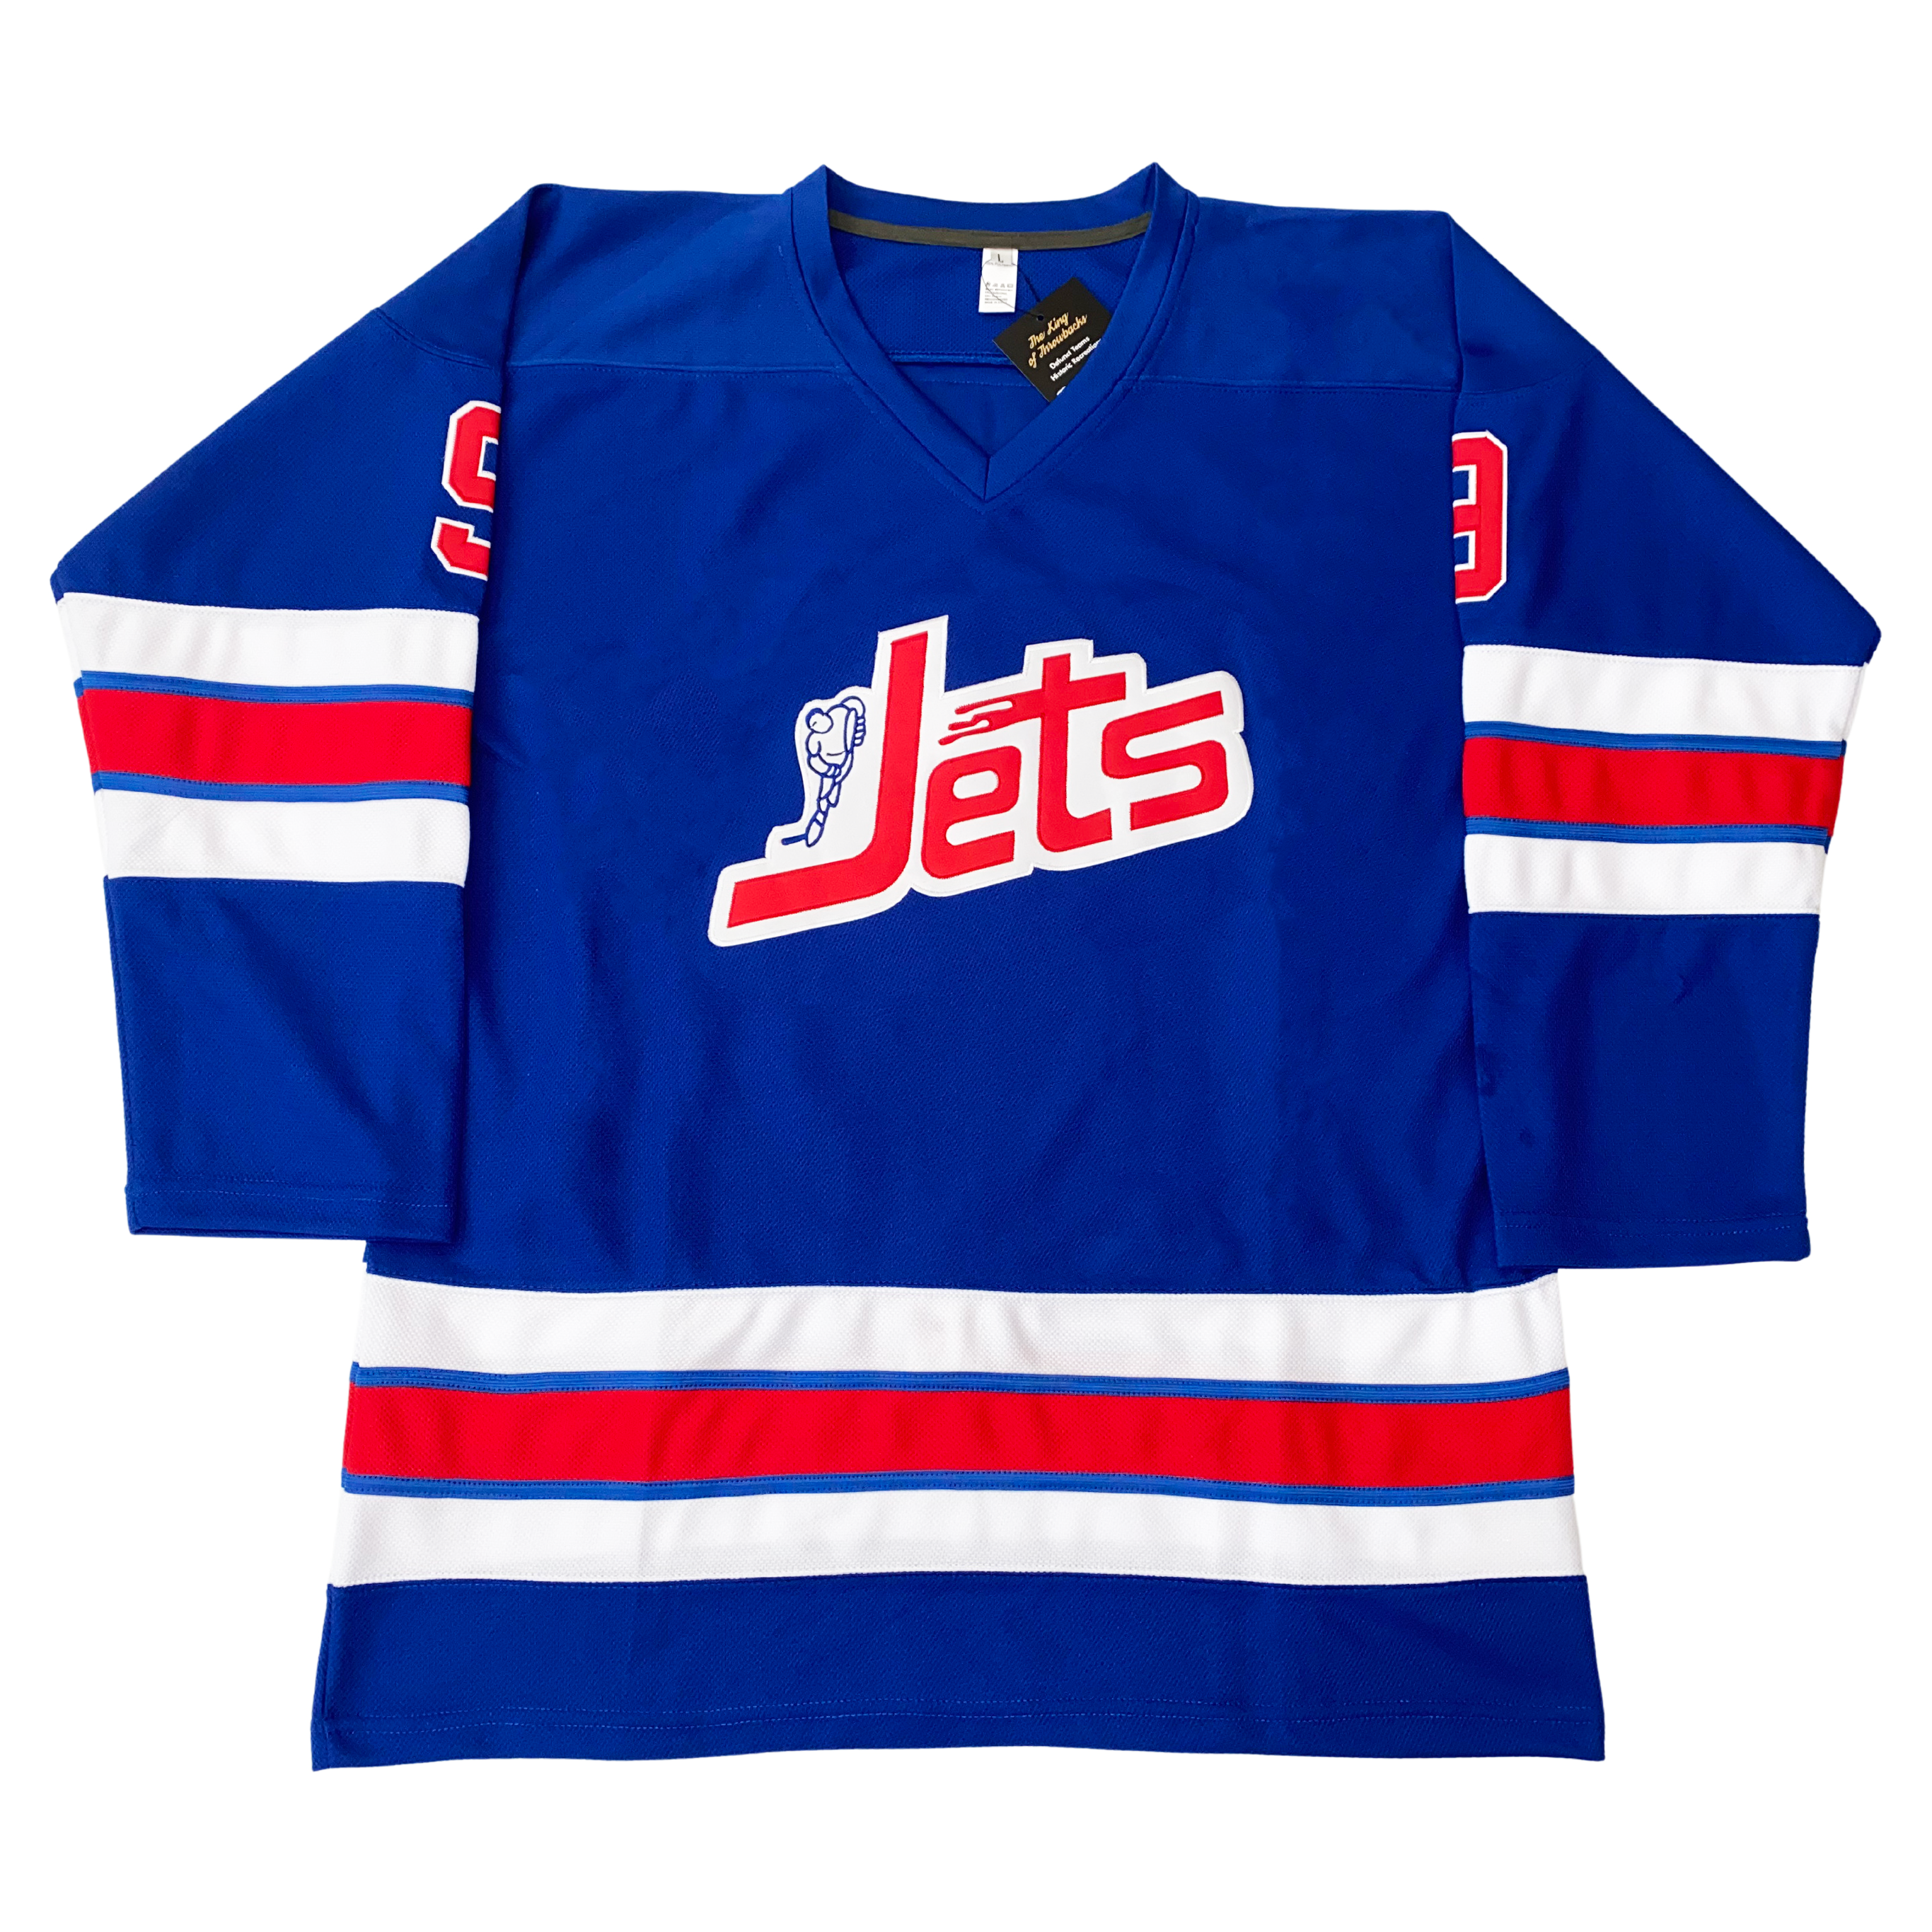 Winnipeg Jets Hockey Jersey For Youth, Women, or Men